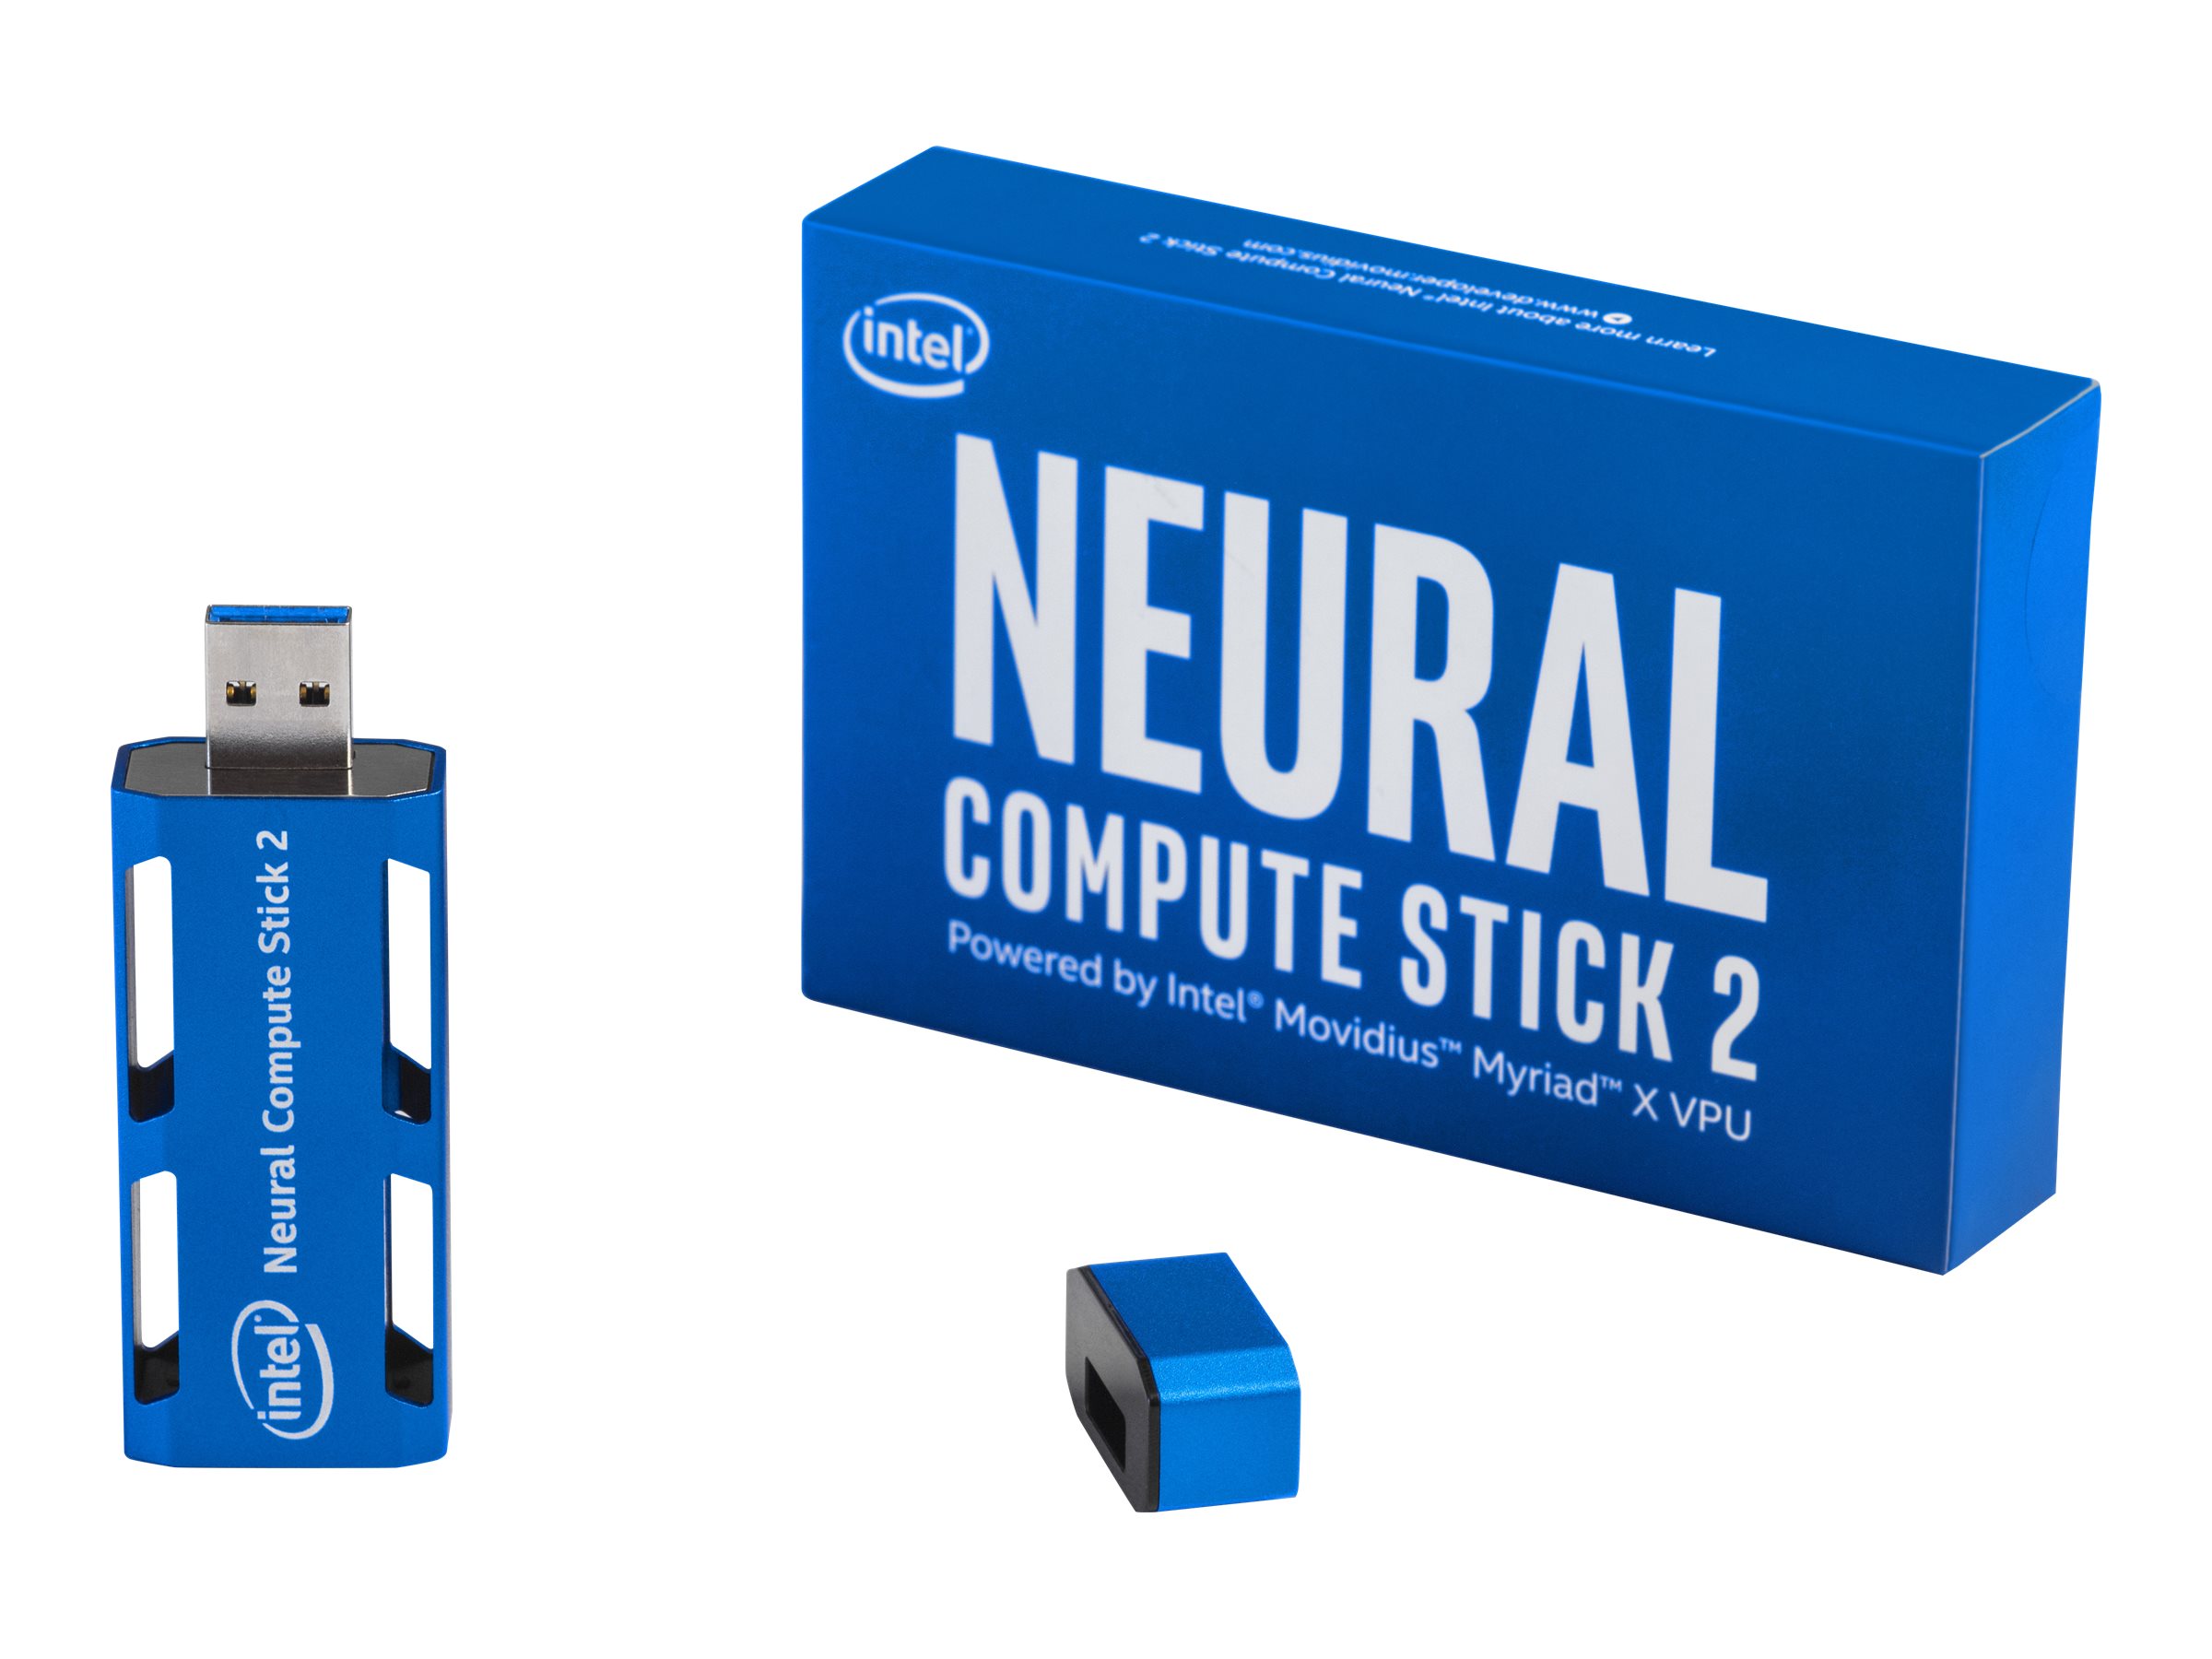 Intel Neural Compute Stick 2 | texas.gs.shi.com